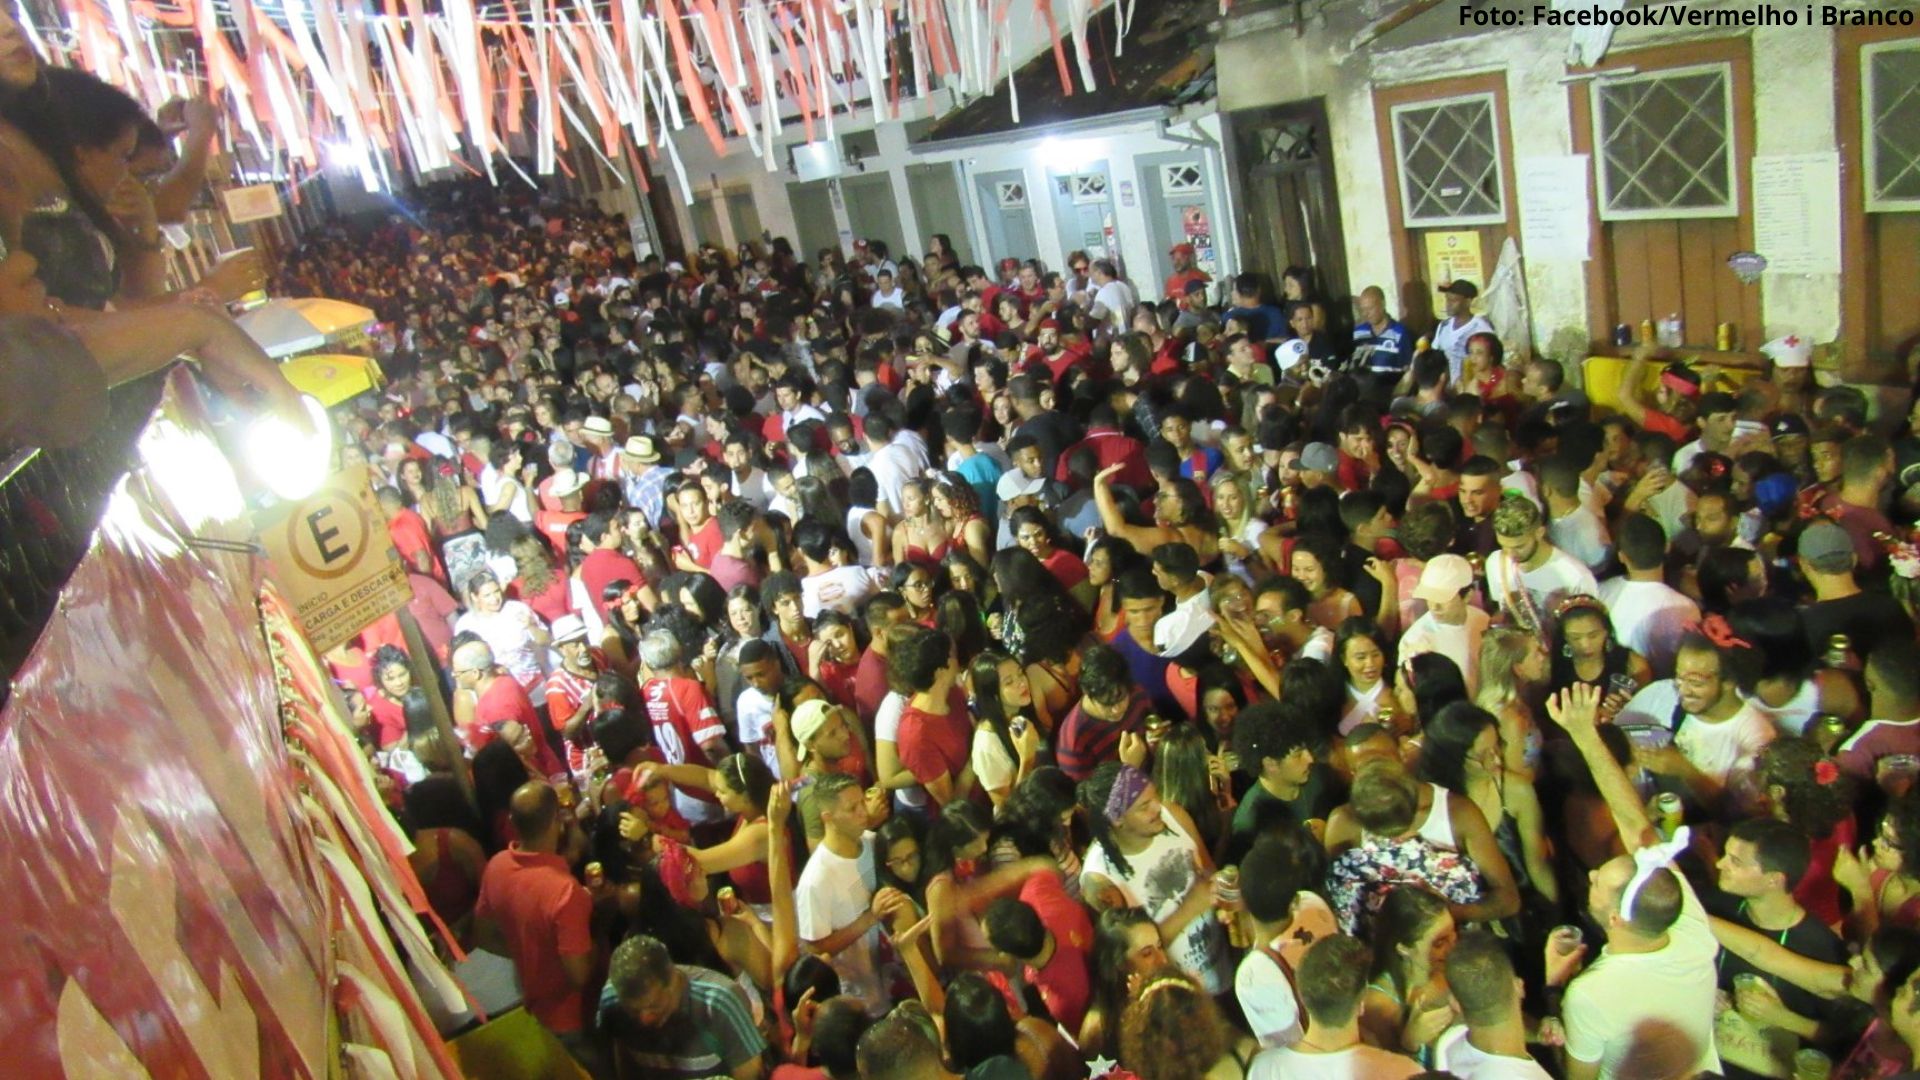 Tradicional no carnaval de Ouro Preto, Bloco Vermelho i Branco volta a agitar foliões após dois anos